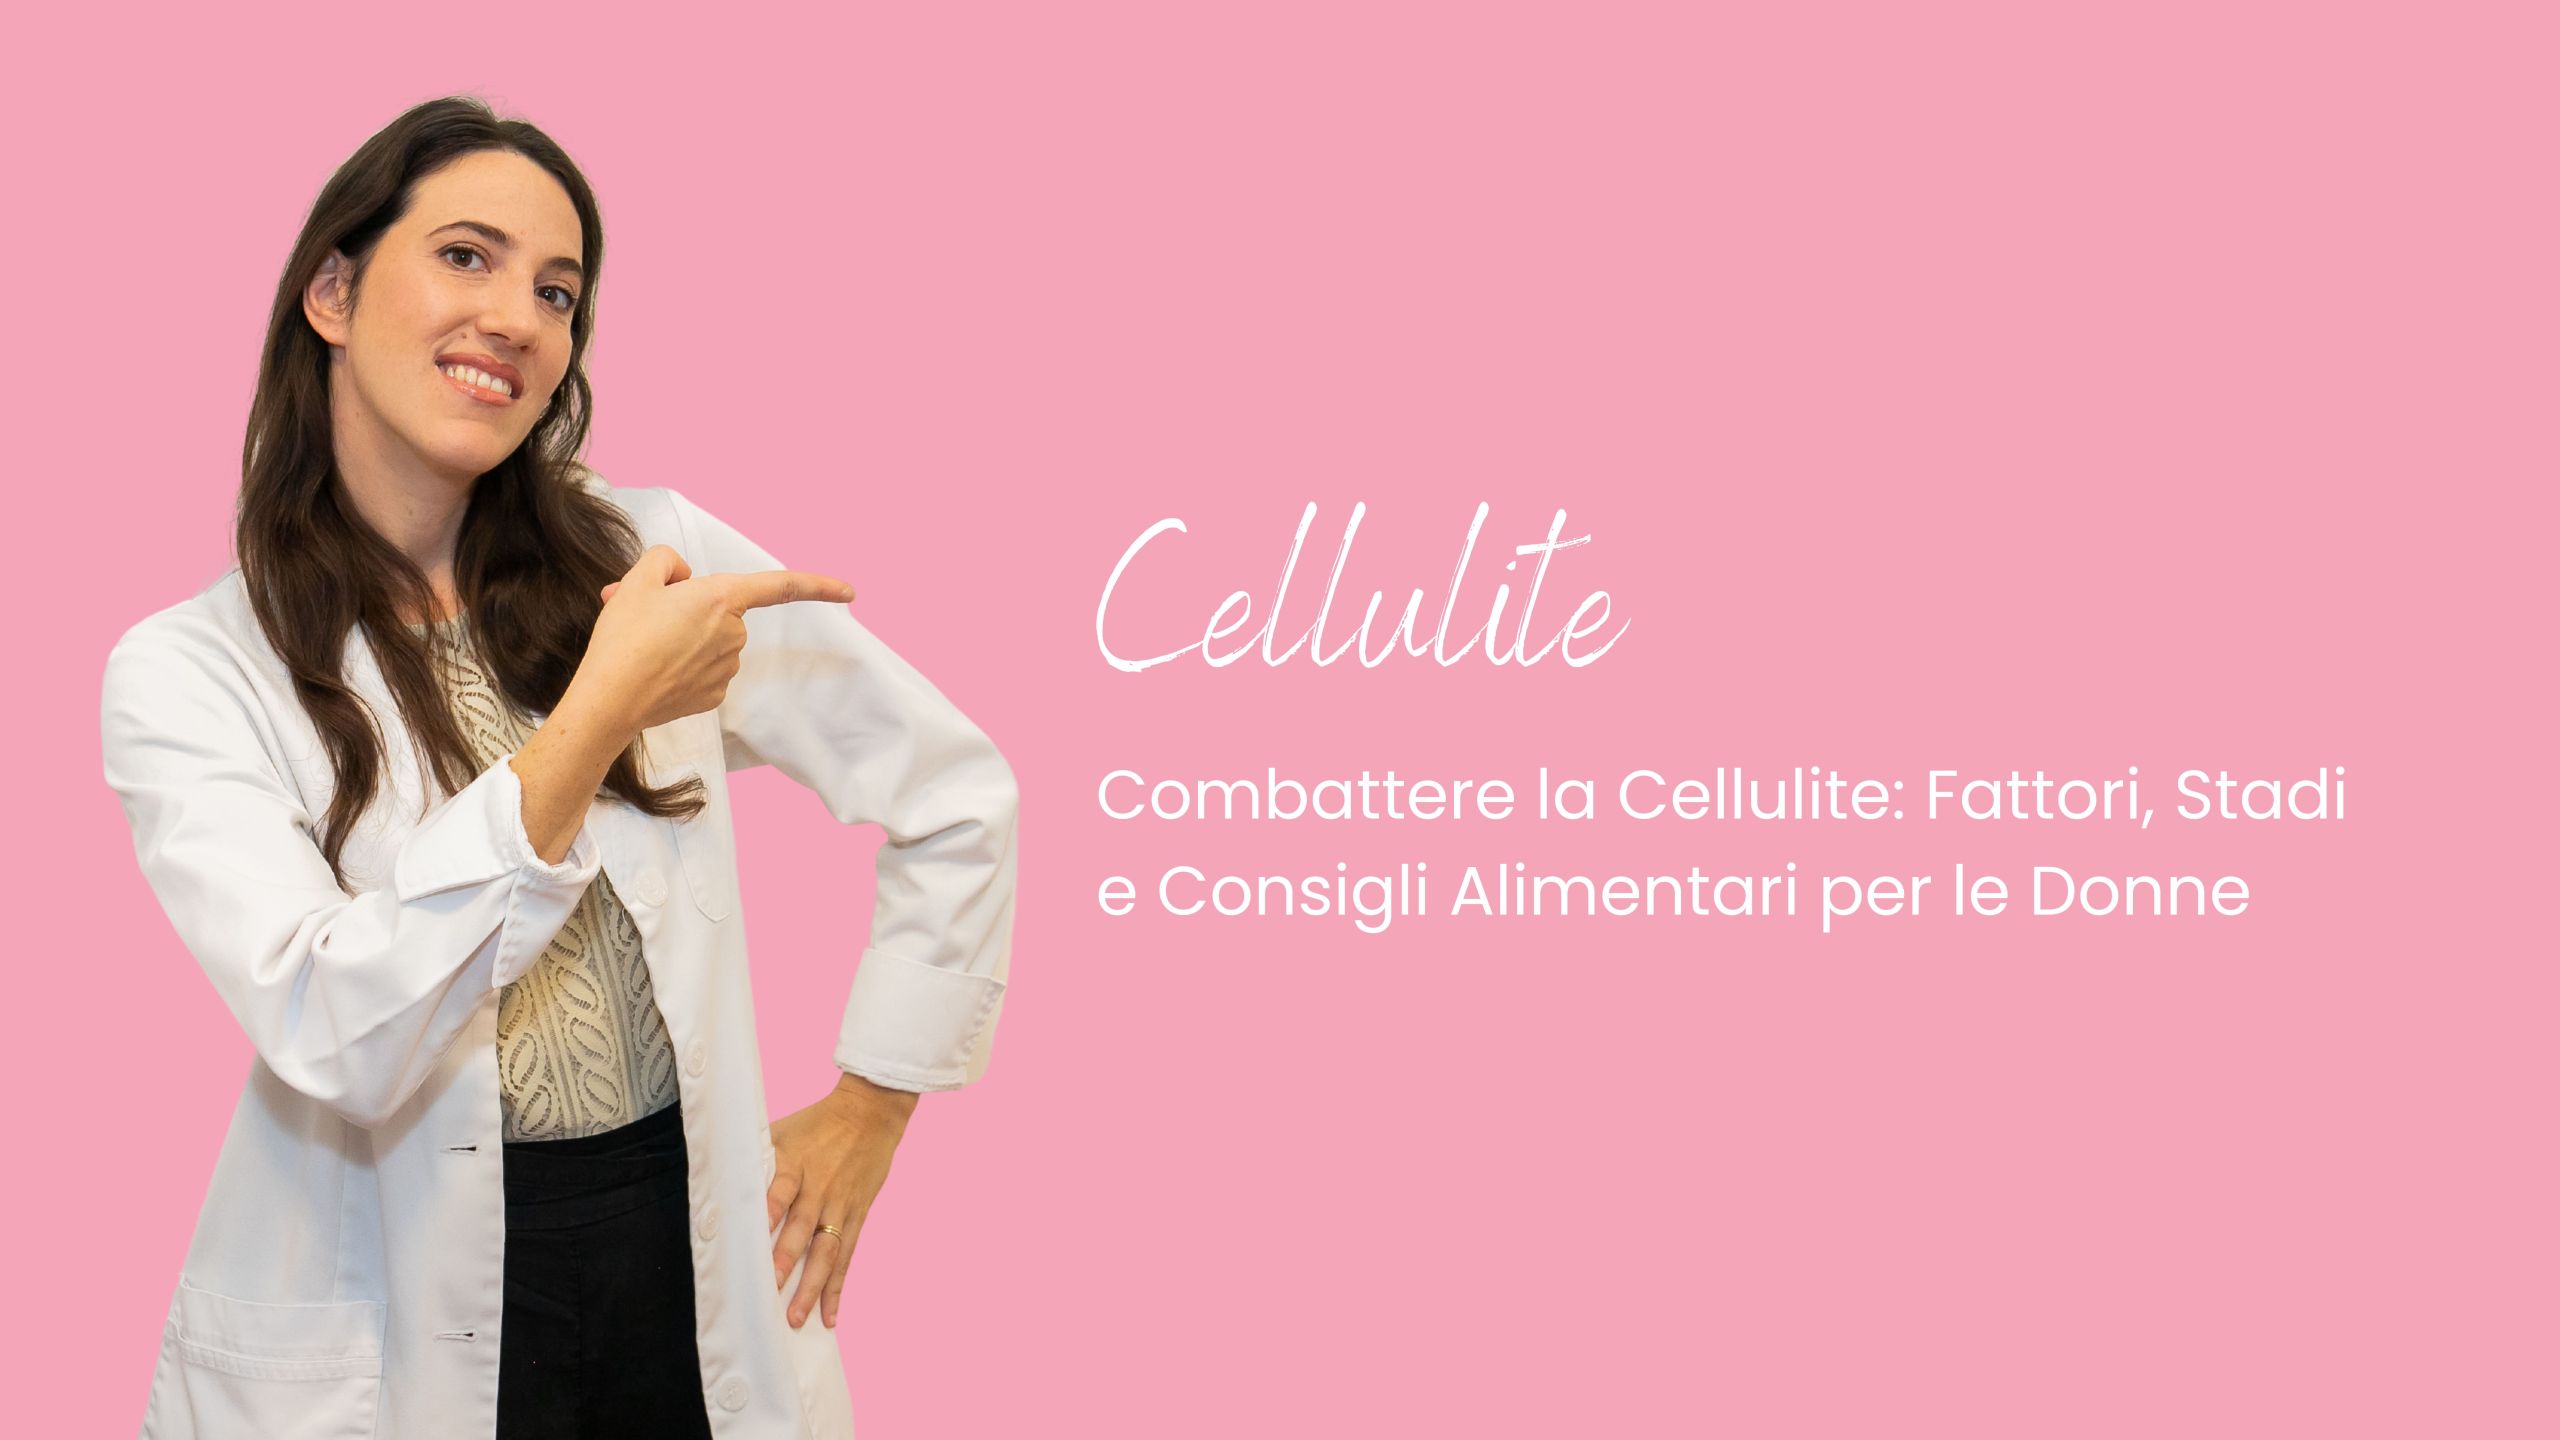 Cellulite